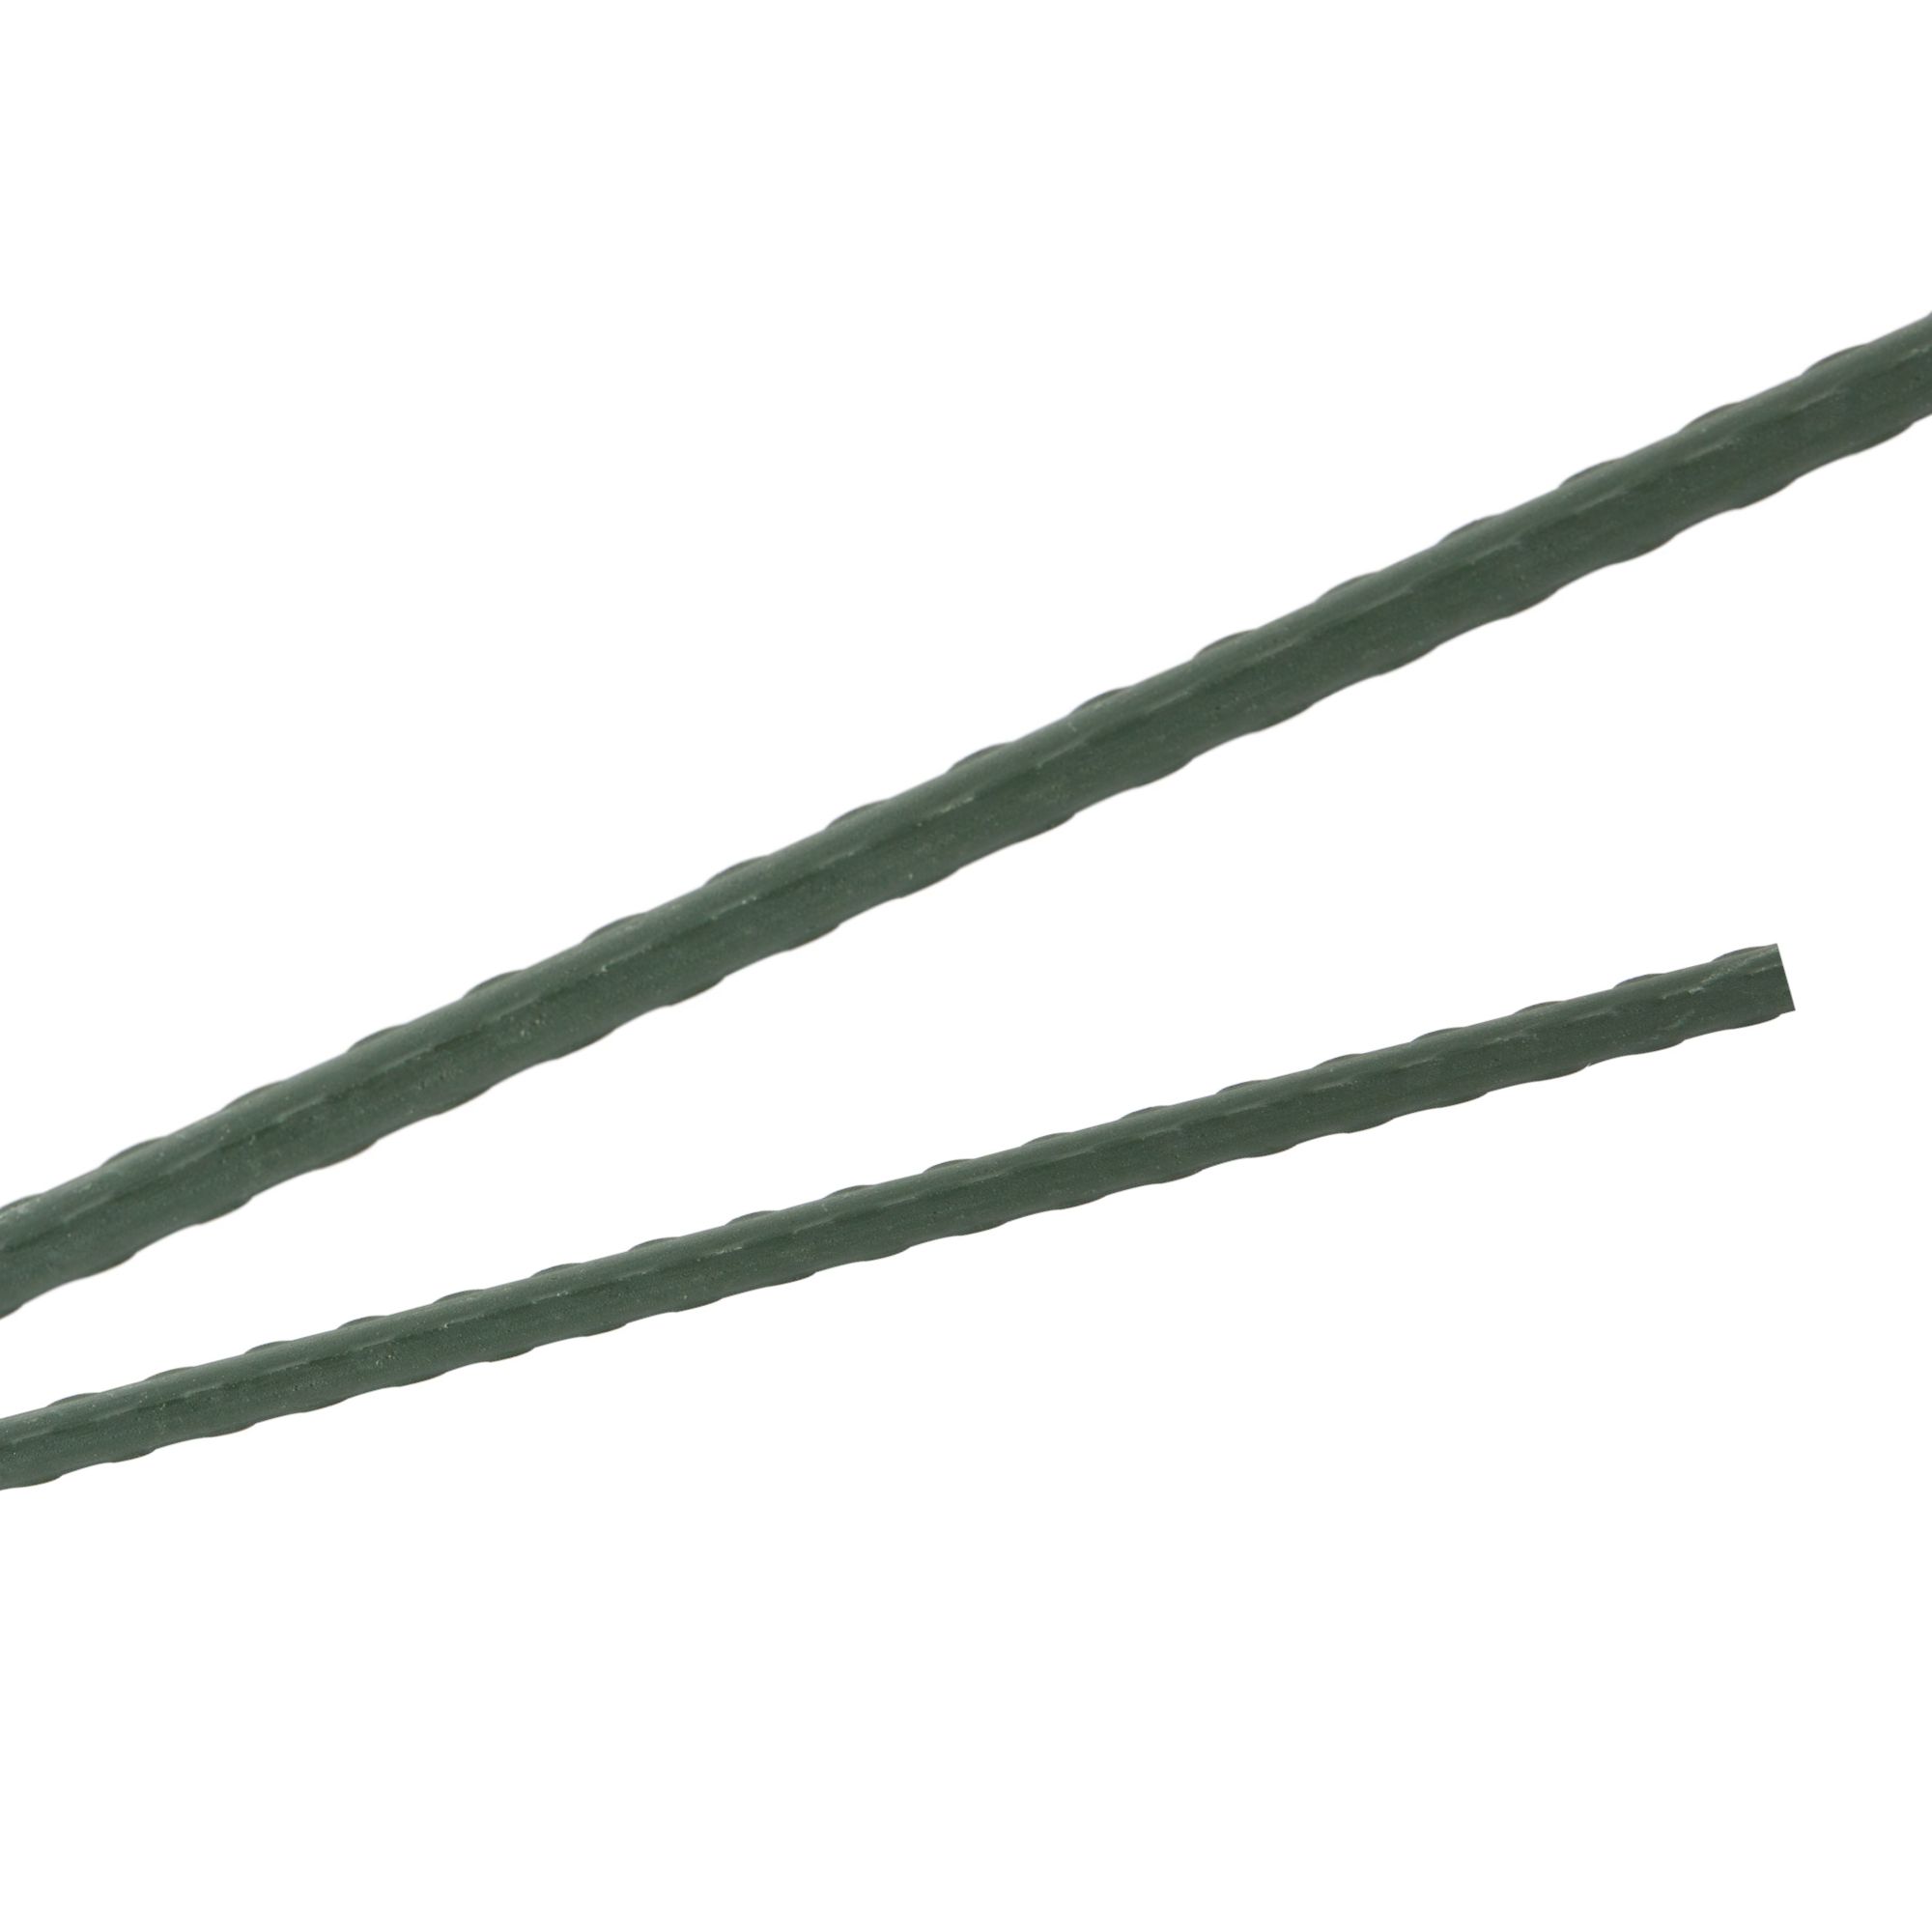 Tyč podpěrná, 8mm, 60cm, kov+PVC, zelená 0.055000 Kg GIGA Sklad20 211778 315